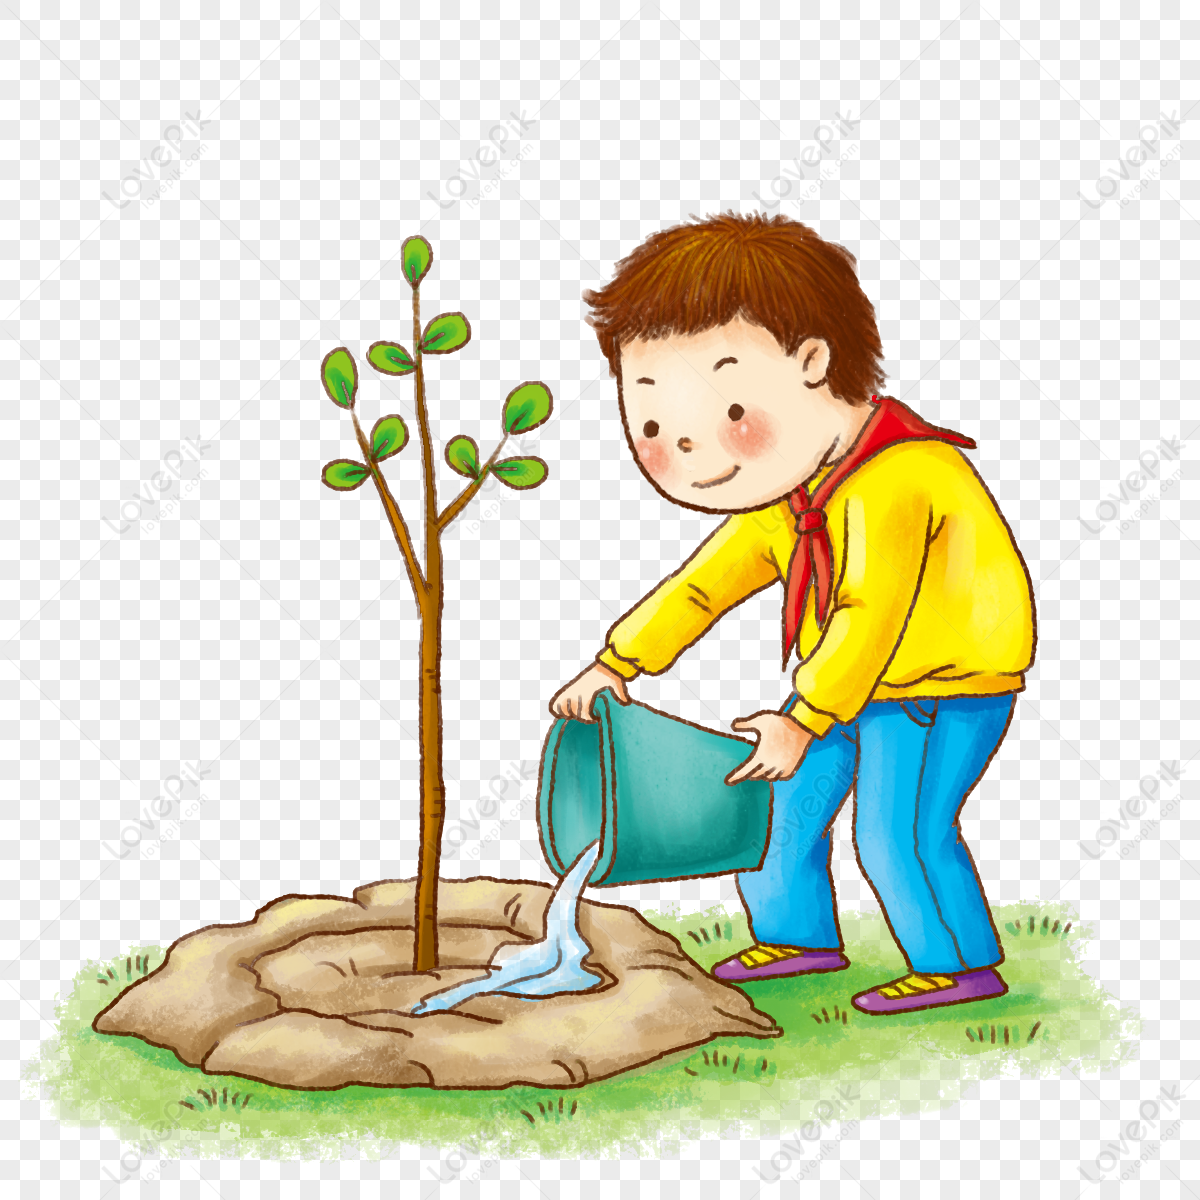 Дерево посадим под окном вырастет оно большое. Дети сажают деревья. Мальчик садит дерево. Посадка деревьев рисунок. Высадка деревьев иллюстрация.